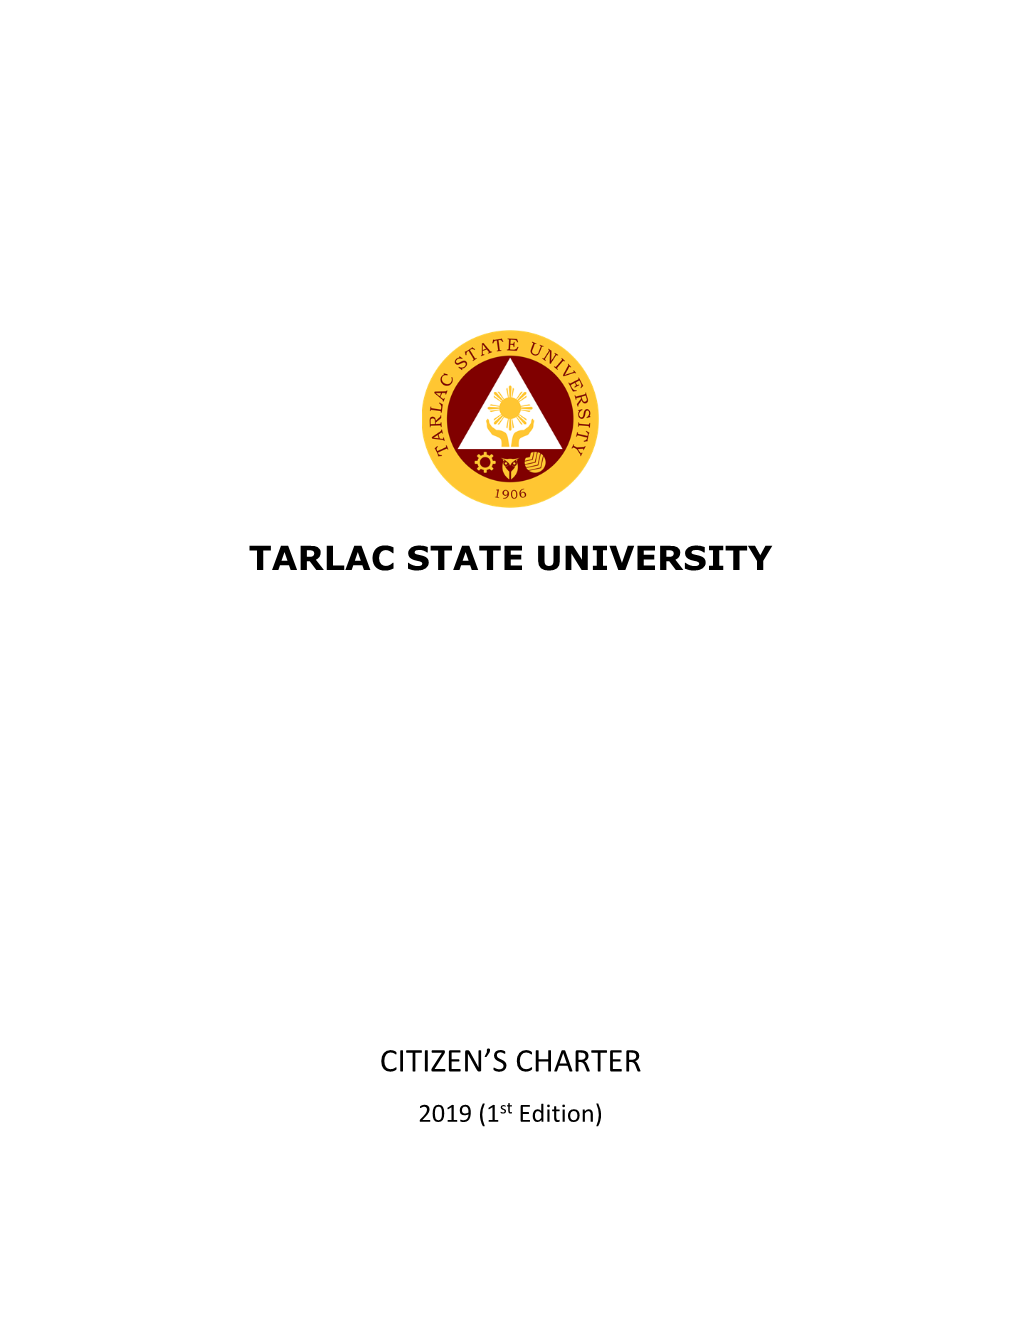 Citizen's Charter 2019